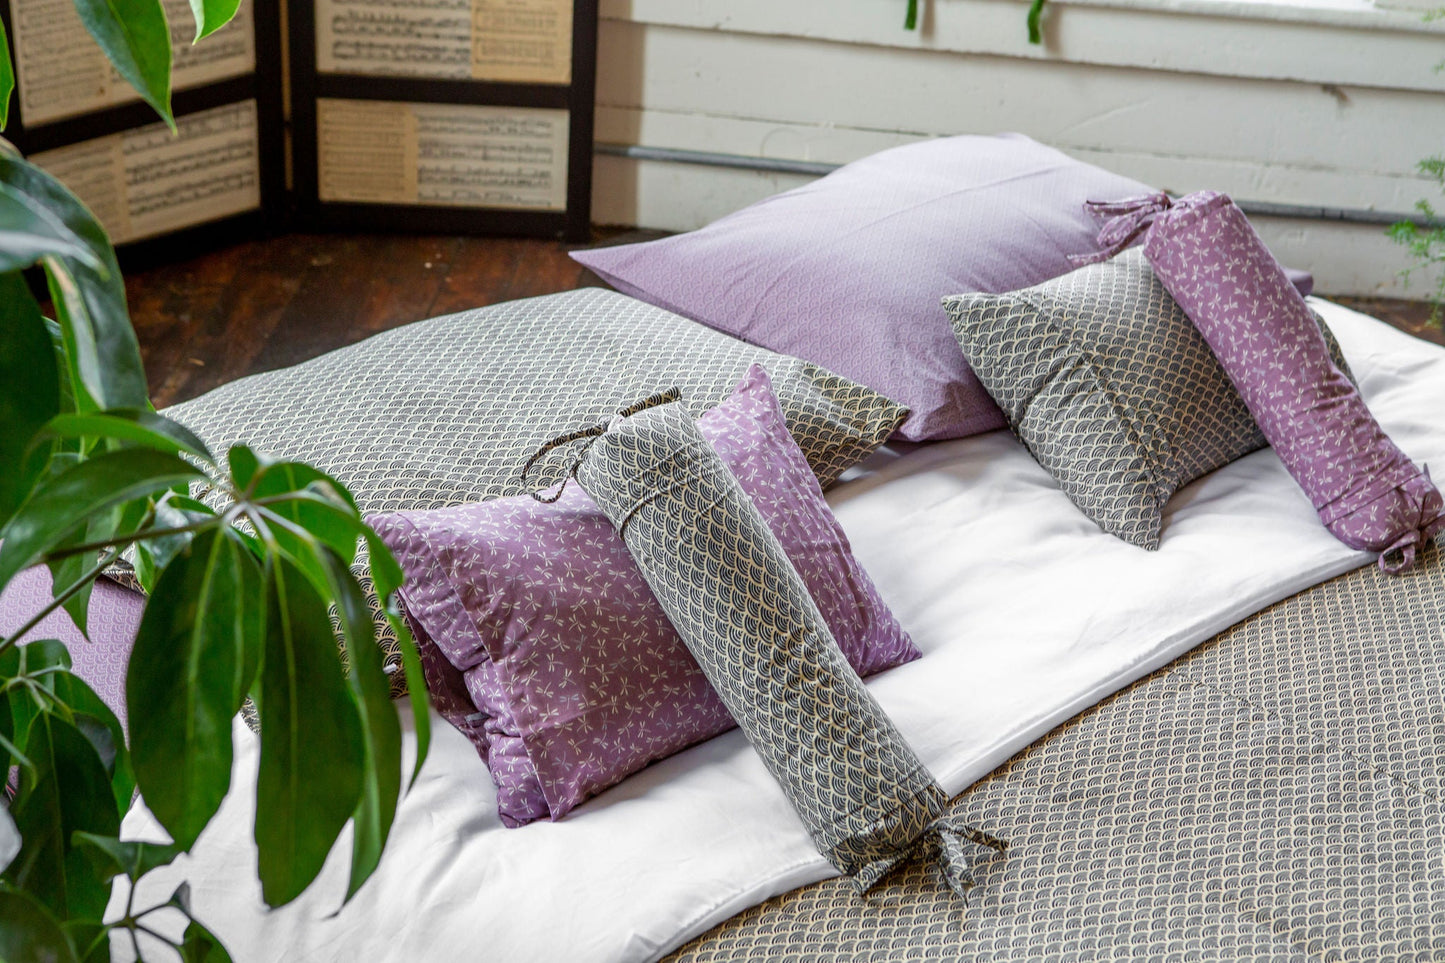 J-Life Tombo Purple Buckwheat Hull Pillow_Pillows & Shams_Buckwheat Hull Pillow_100% double cleaned organic American fluffy